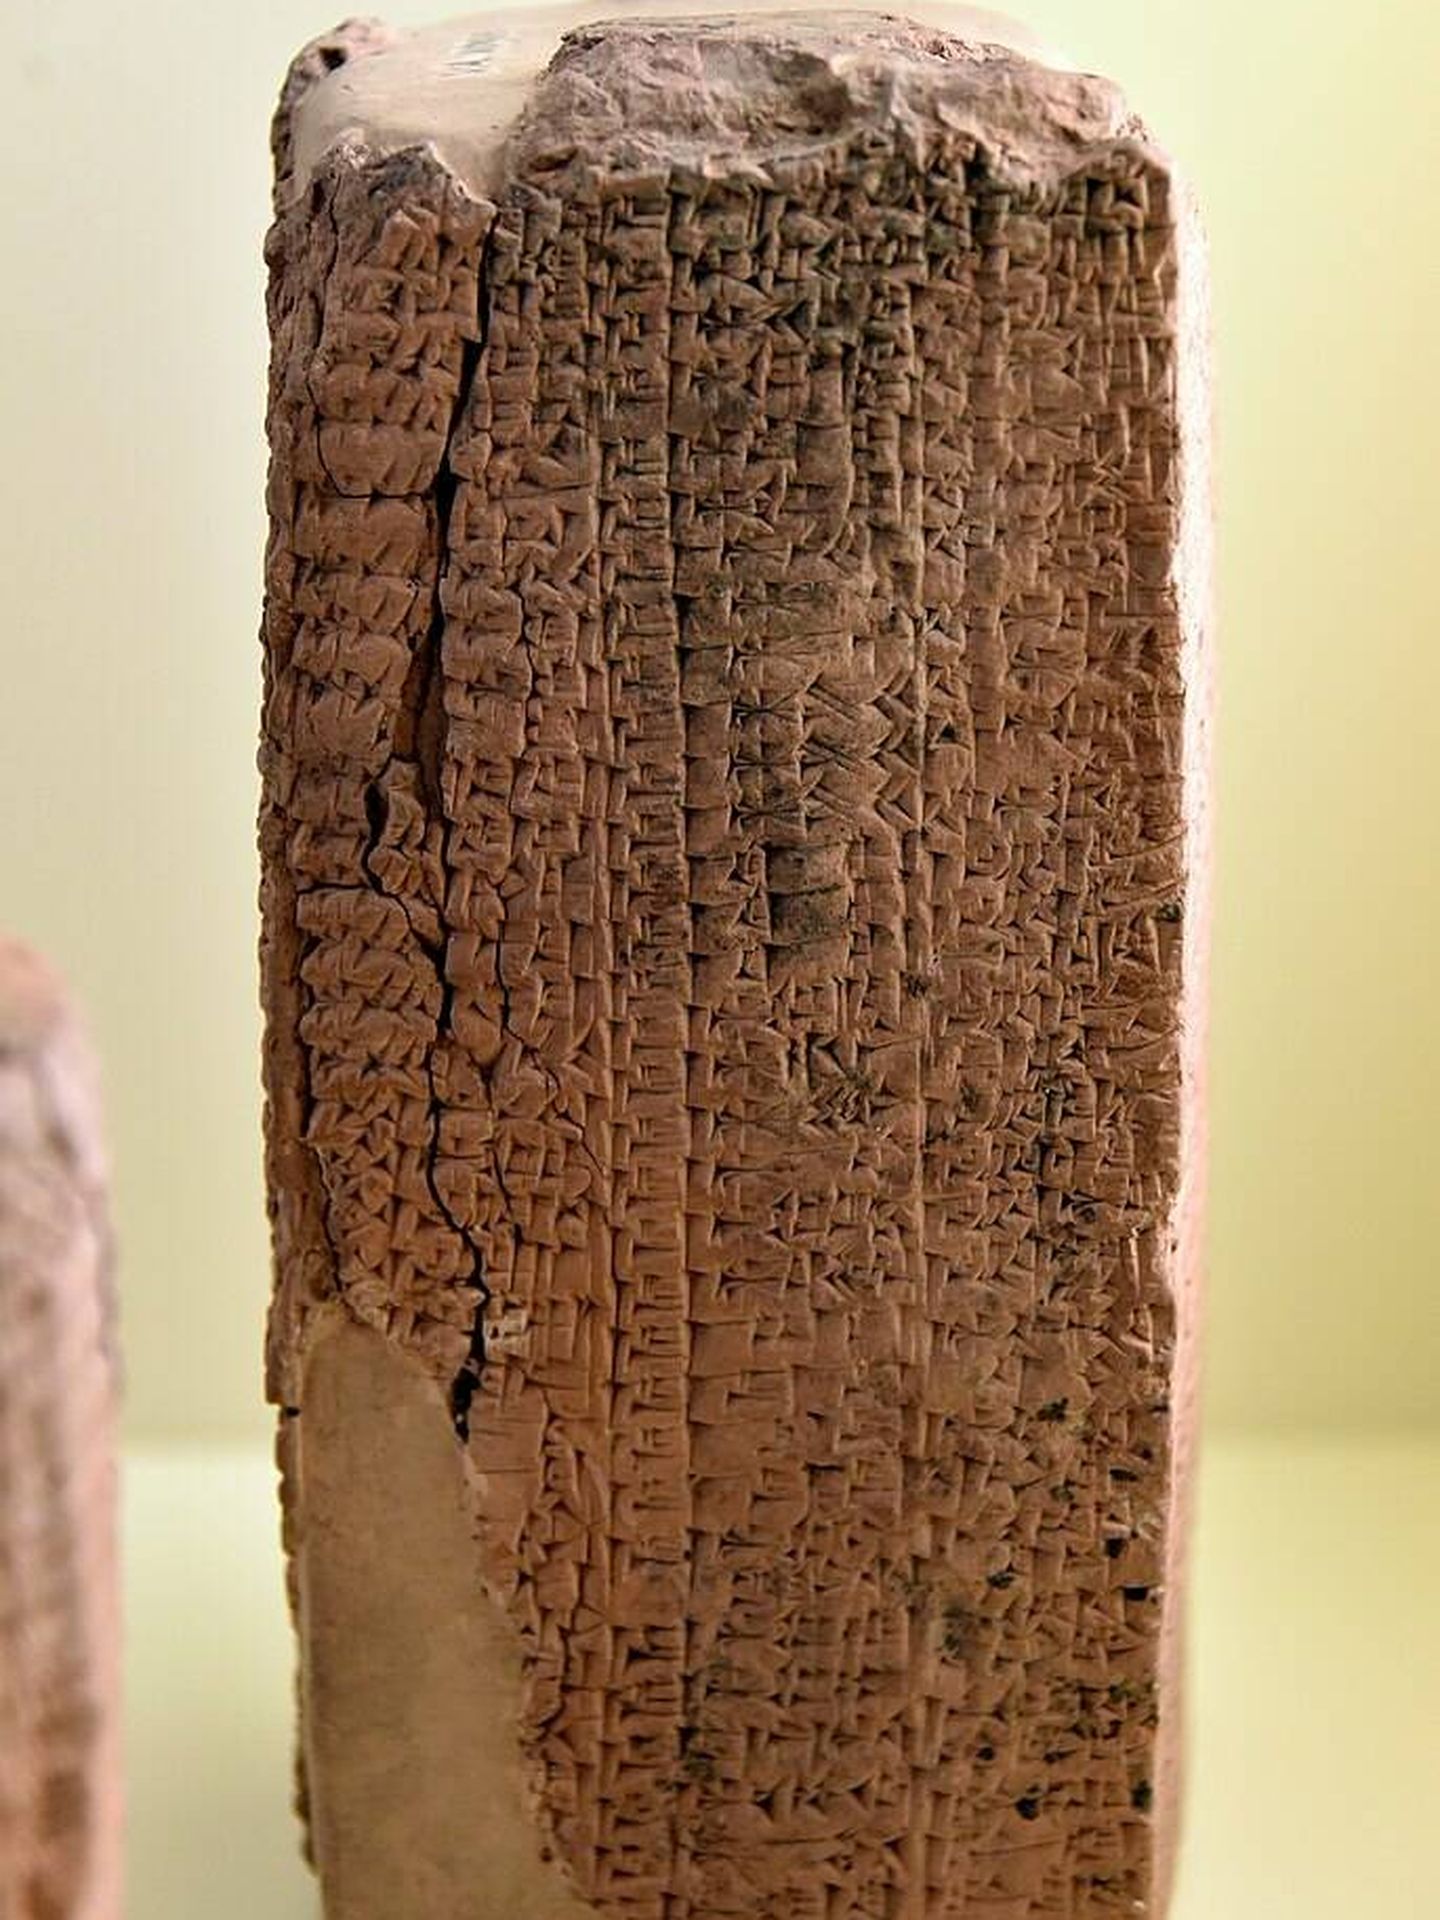 Una inscripción cuneiforme acadia del siglo XVIII a.C. en Irak que menciona una lista de nombres de trabajadores. (WIkemedia)